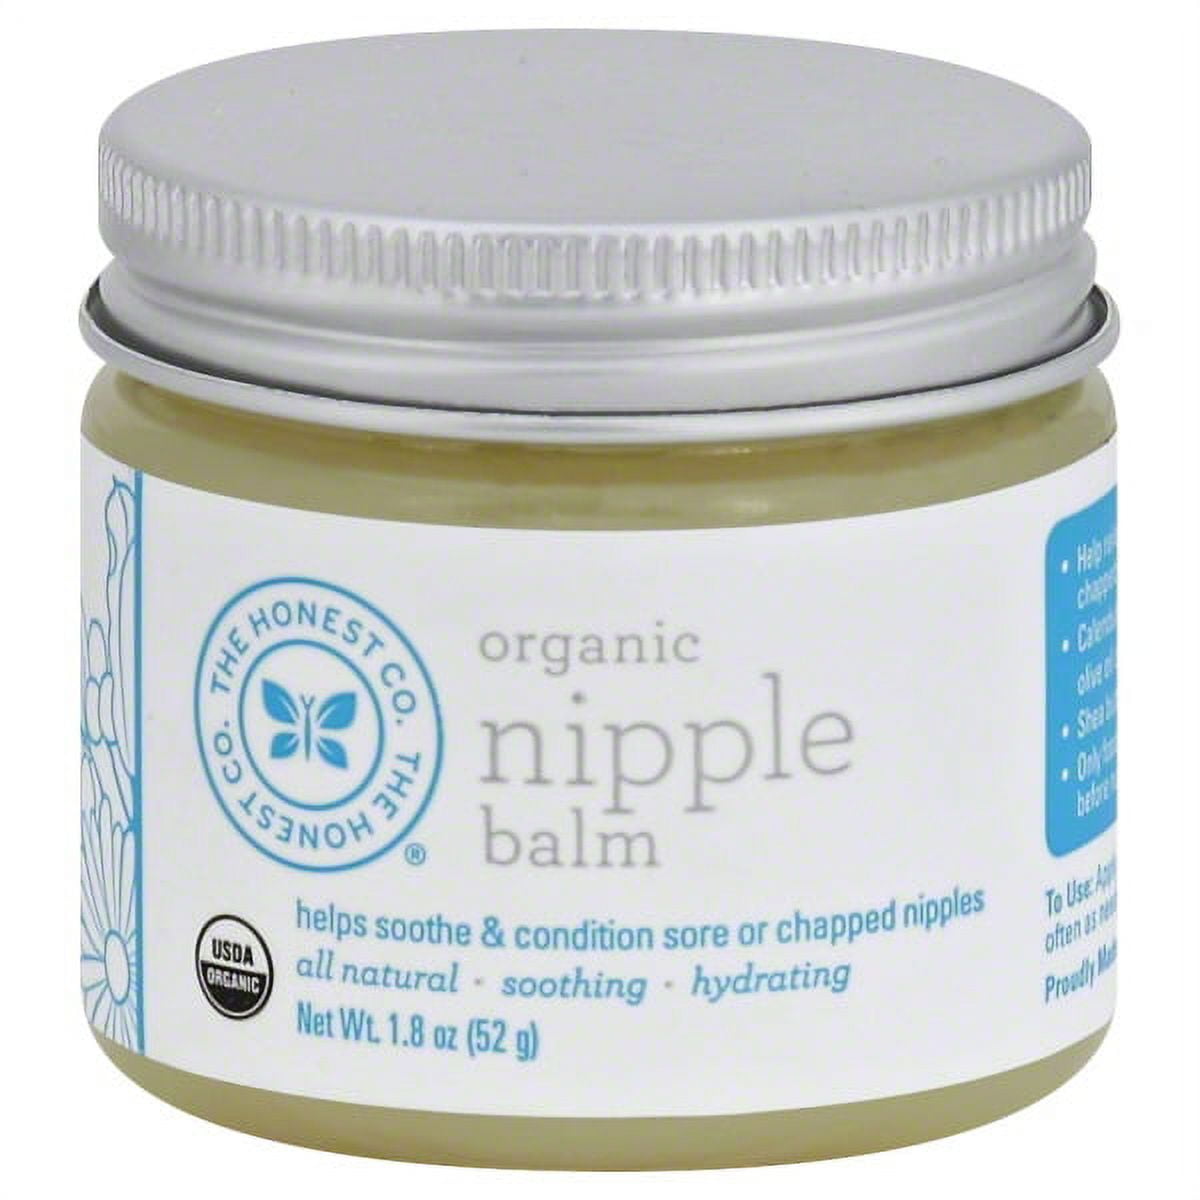 Organic Nipple Balm – Kiya's Naturals